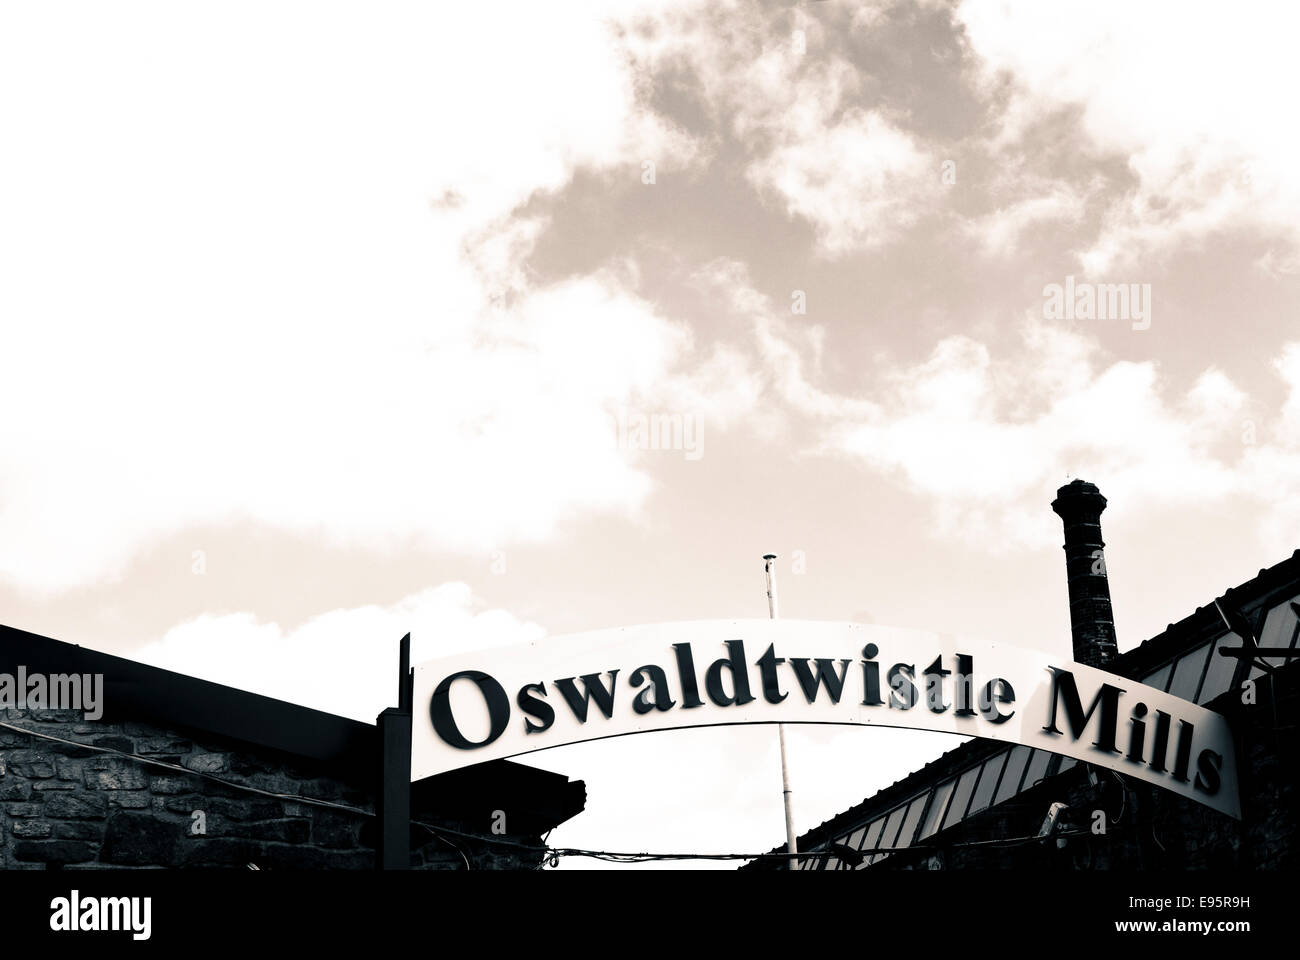 Oswaldtwistle Mills, Oswaldtwistle , Lancashire, Uk Stock Photo